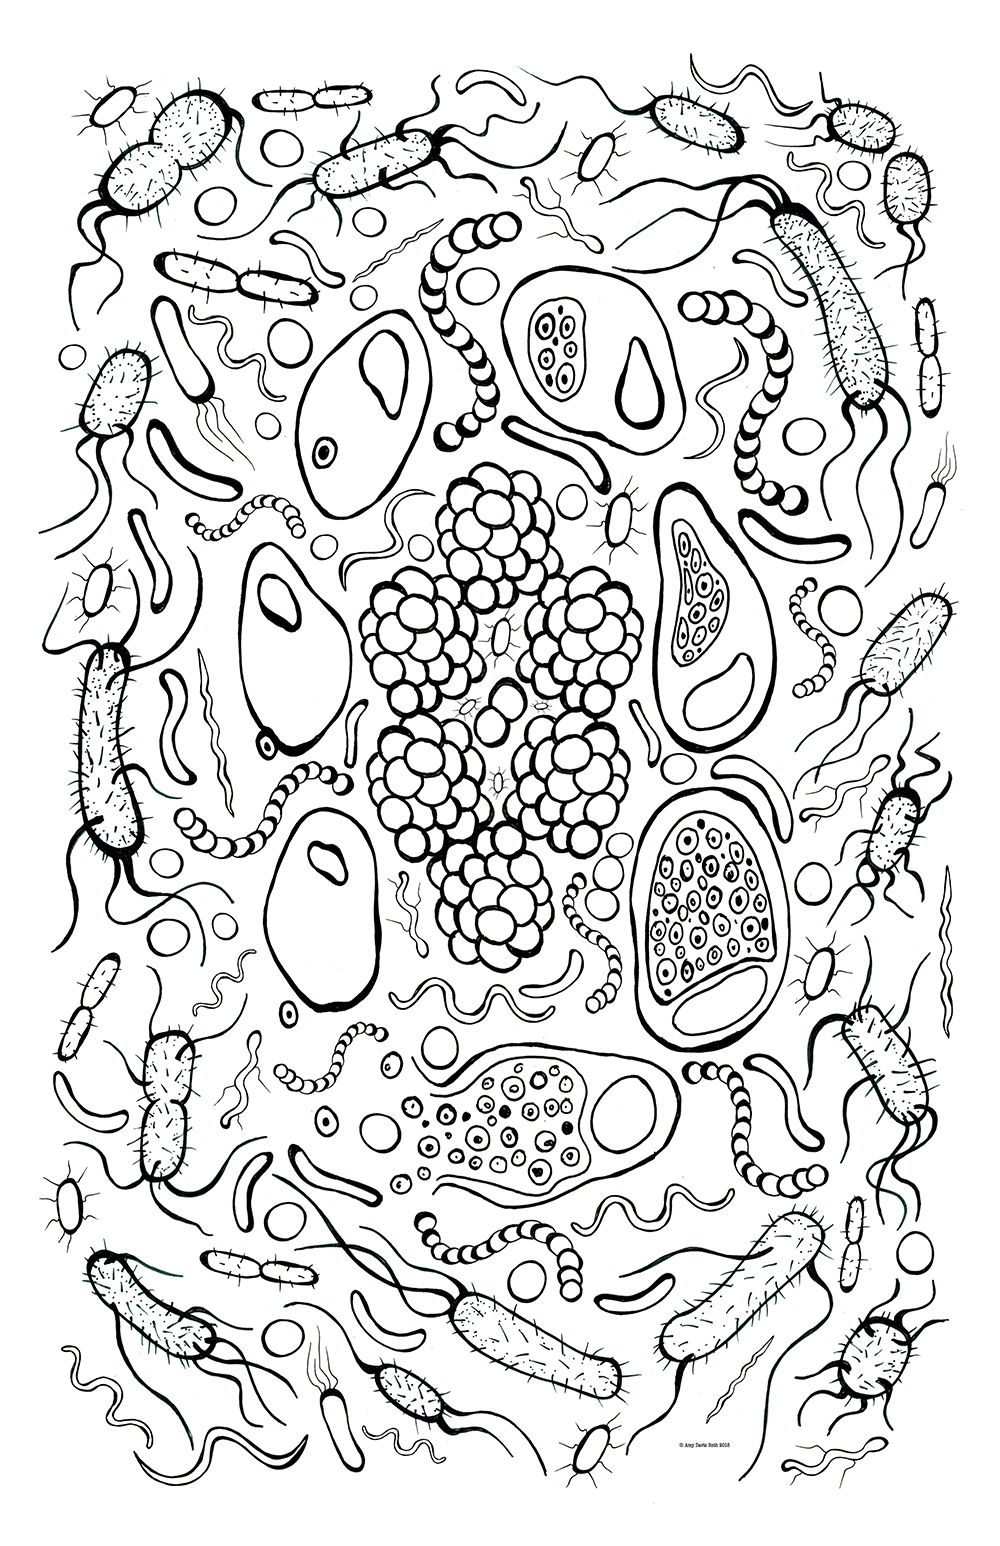 Bacteria coloring #16, Download drawings